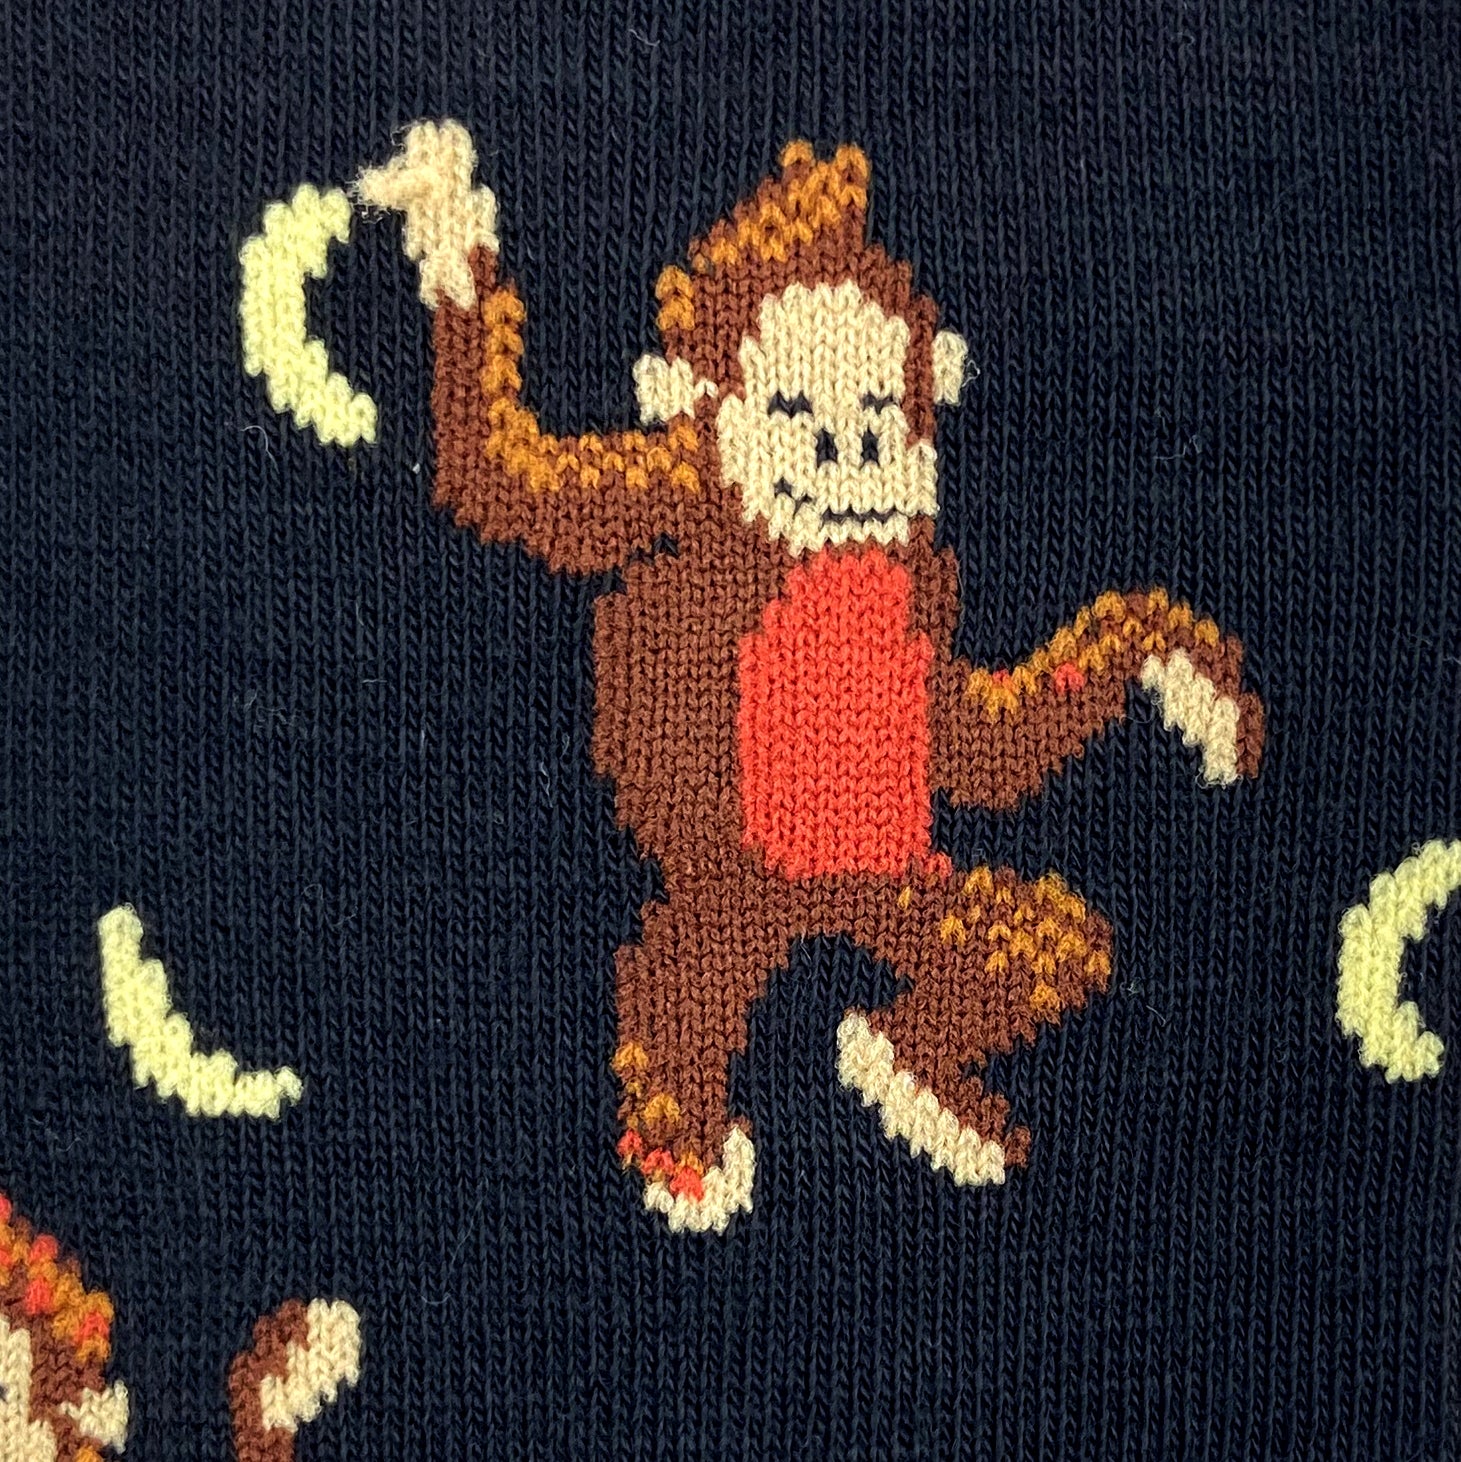 Unisex Chimpanzee Monkey and Bananas Patterned Novelty Crew Socks